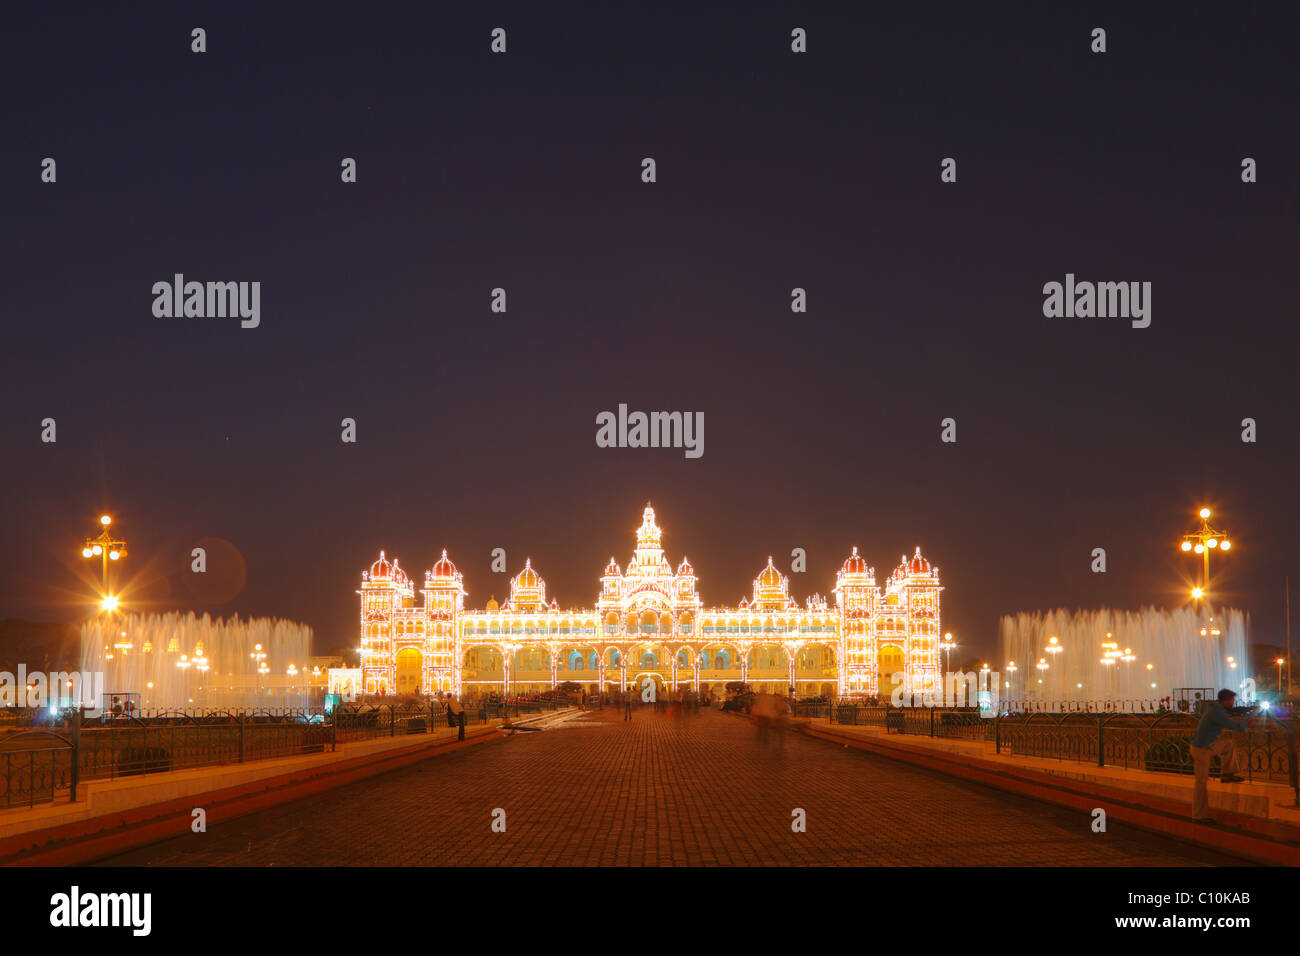 Maharaja's Palace, palais de Mysore, Amba Vilas, illumination sur un dimanche avec les ampoules, , l'Inde du Sud, Inde, Asie du Sud, Asie Banque D'Images